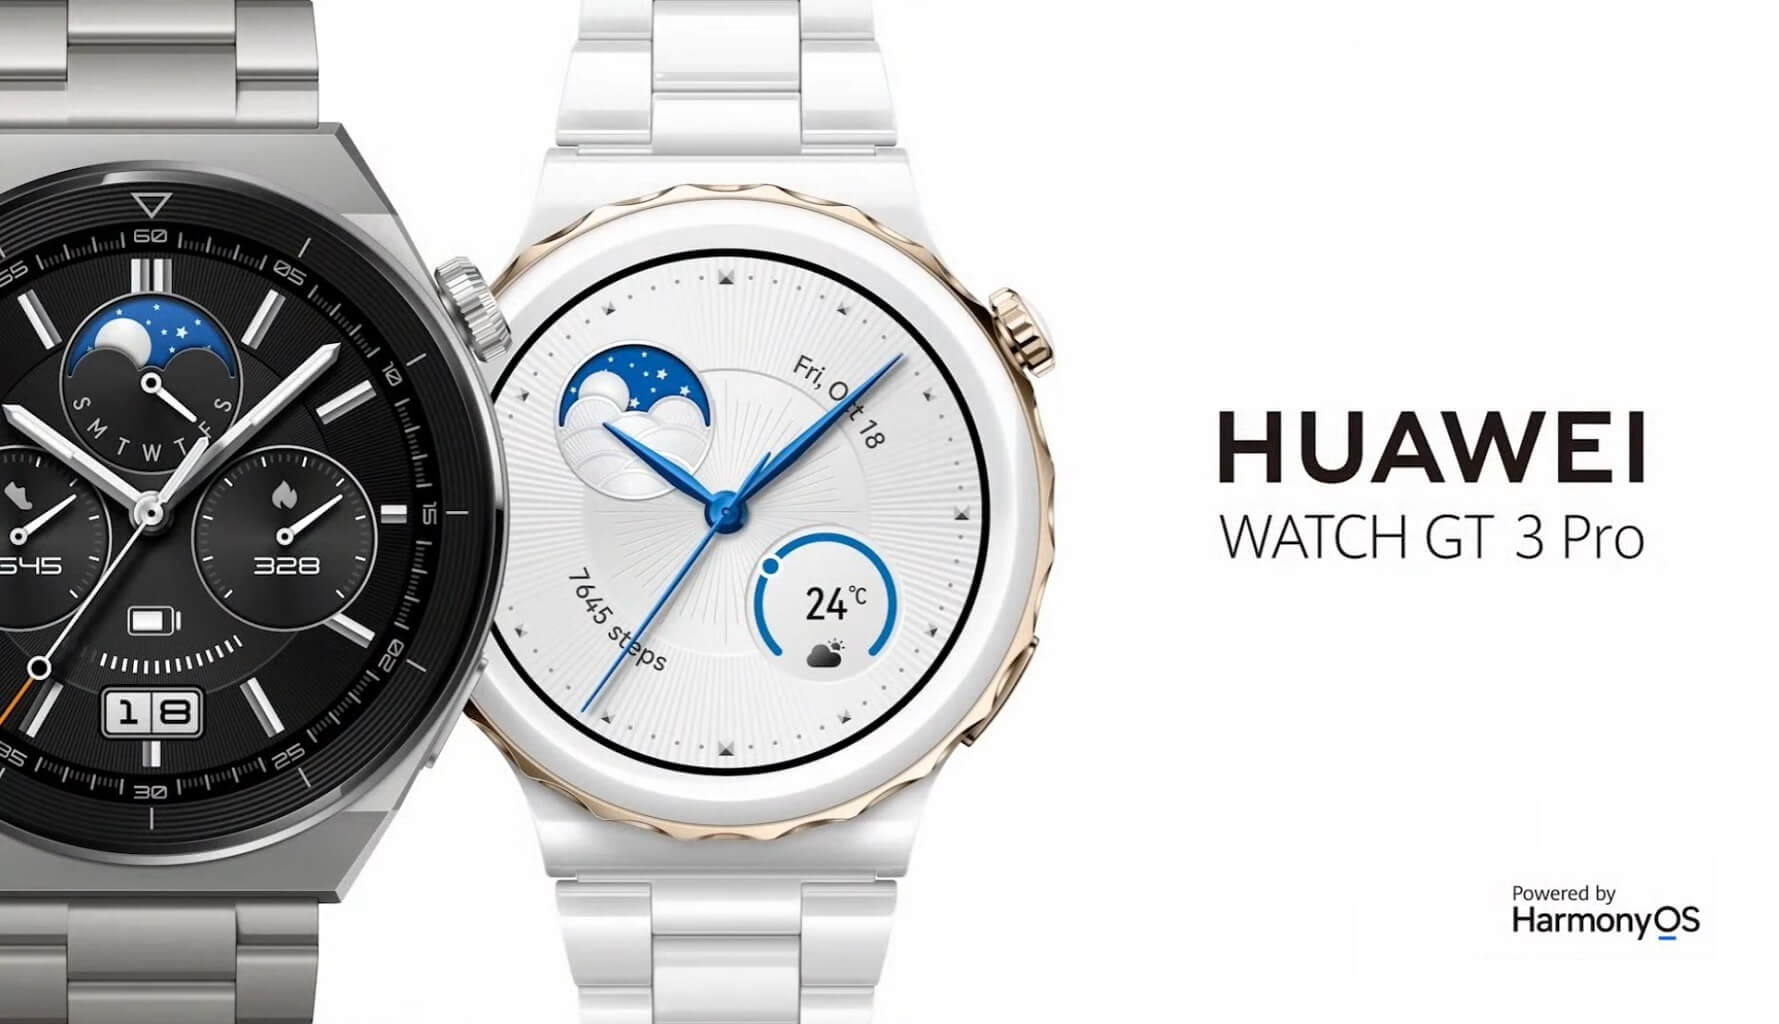 Huawei Watch GT 3 Pro launch